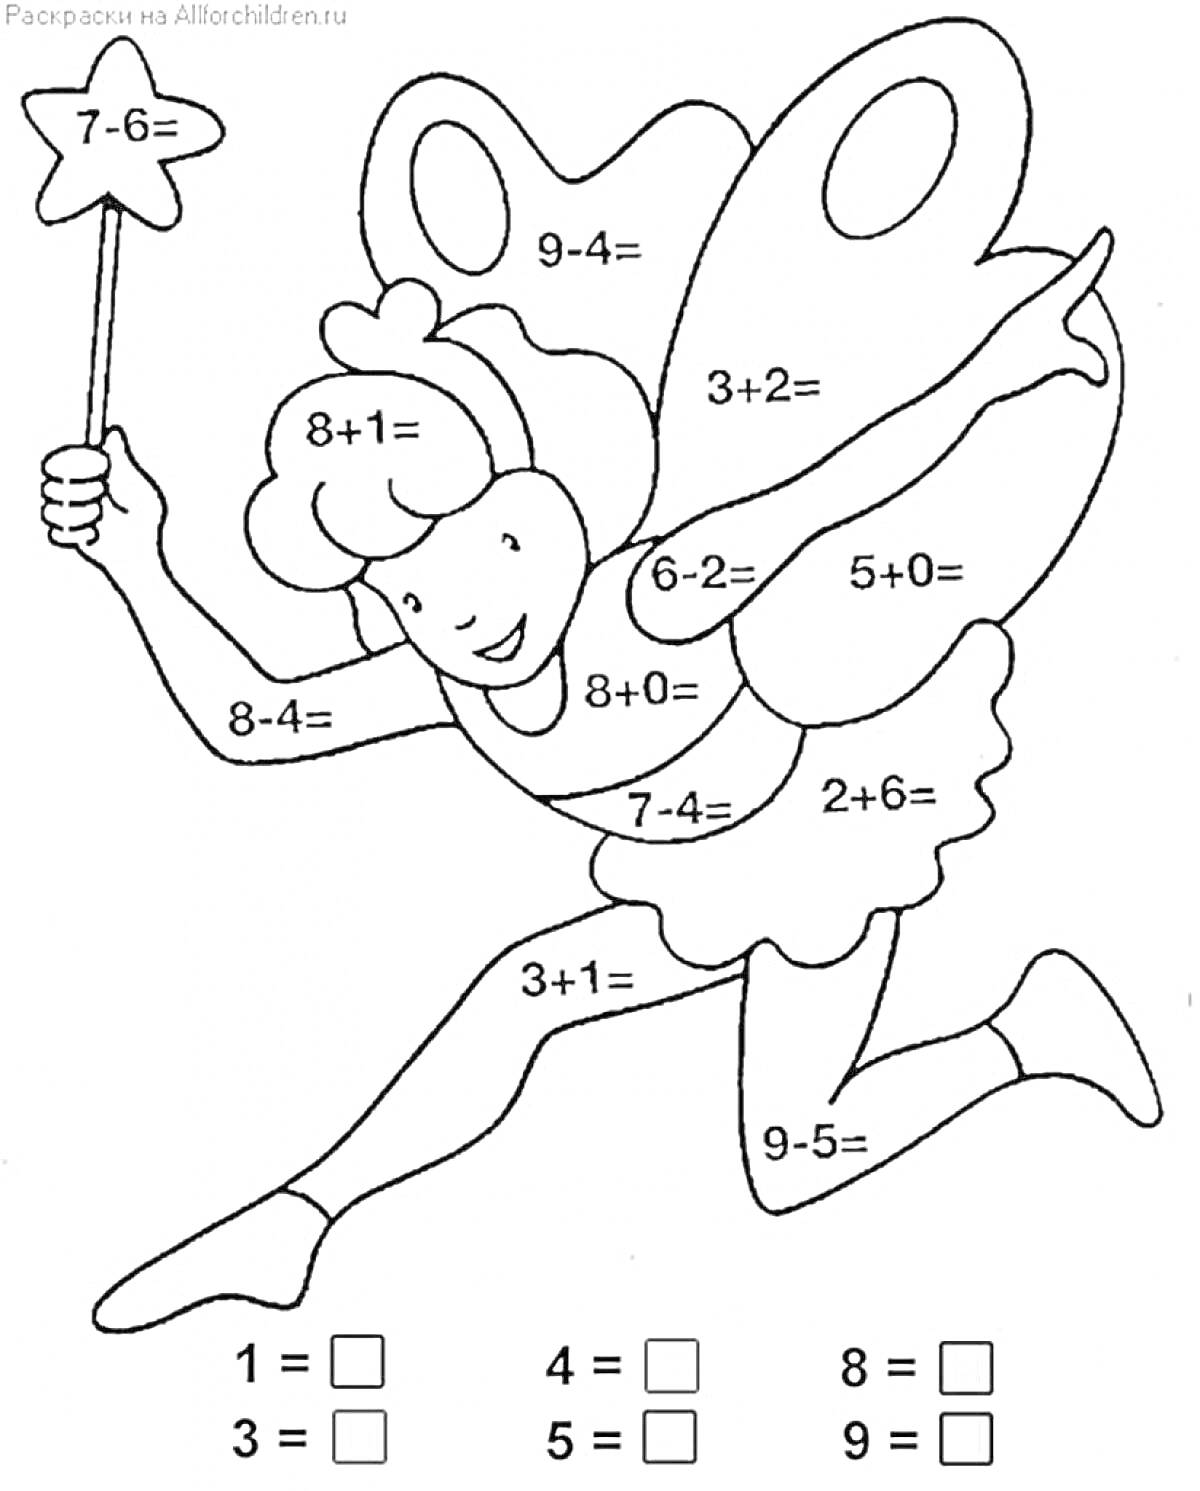 Раскраска Фея с математическими задачами на крыльях и одежде